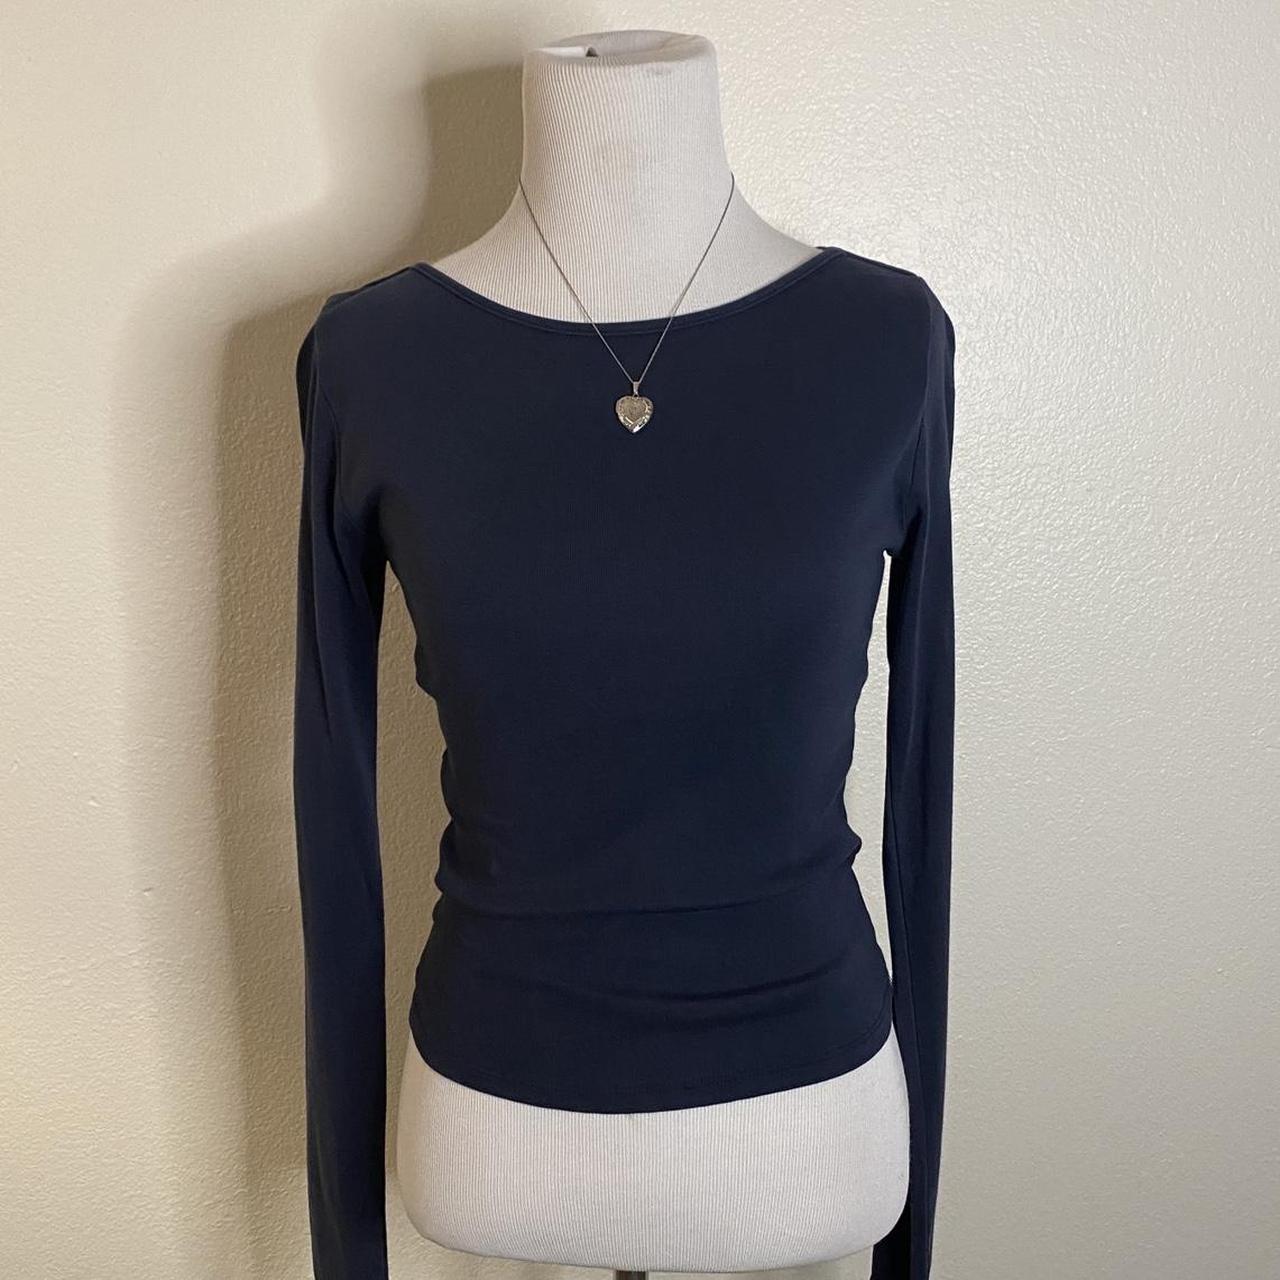 Brandy Melville Women's Navy Shirt | Depop